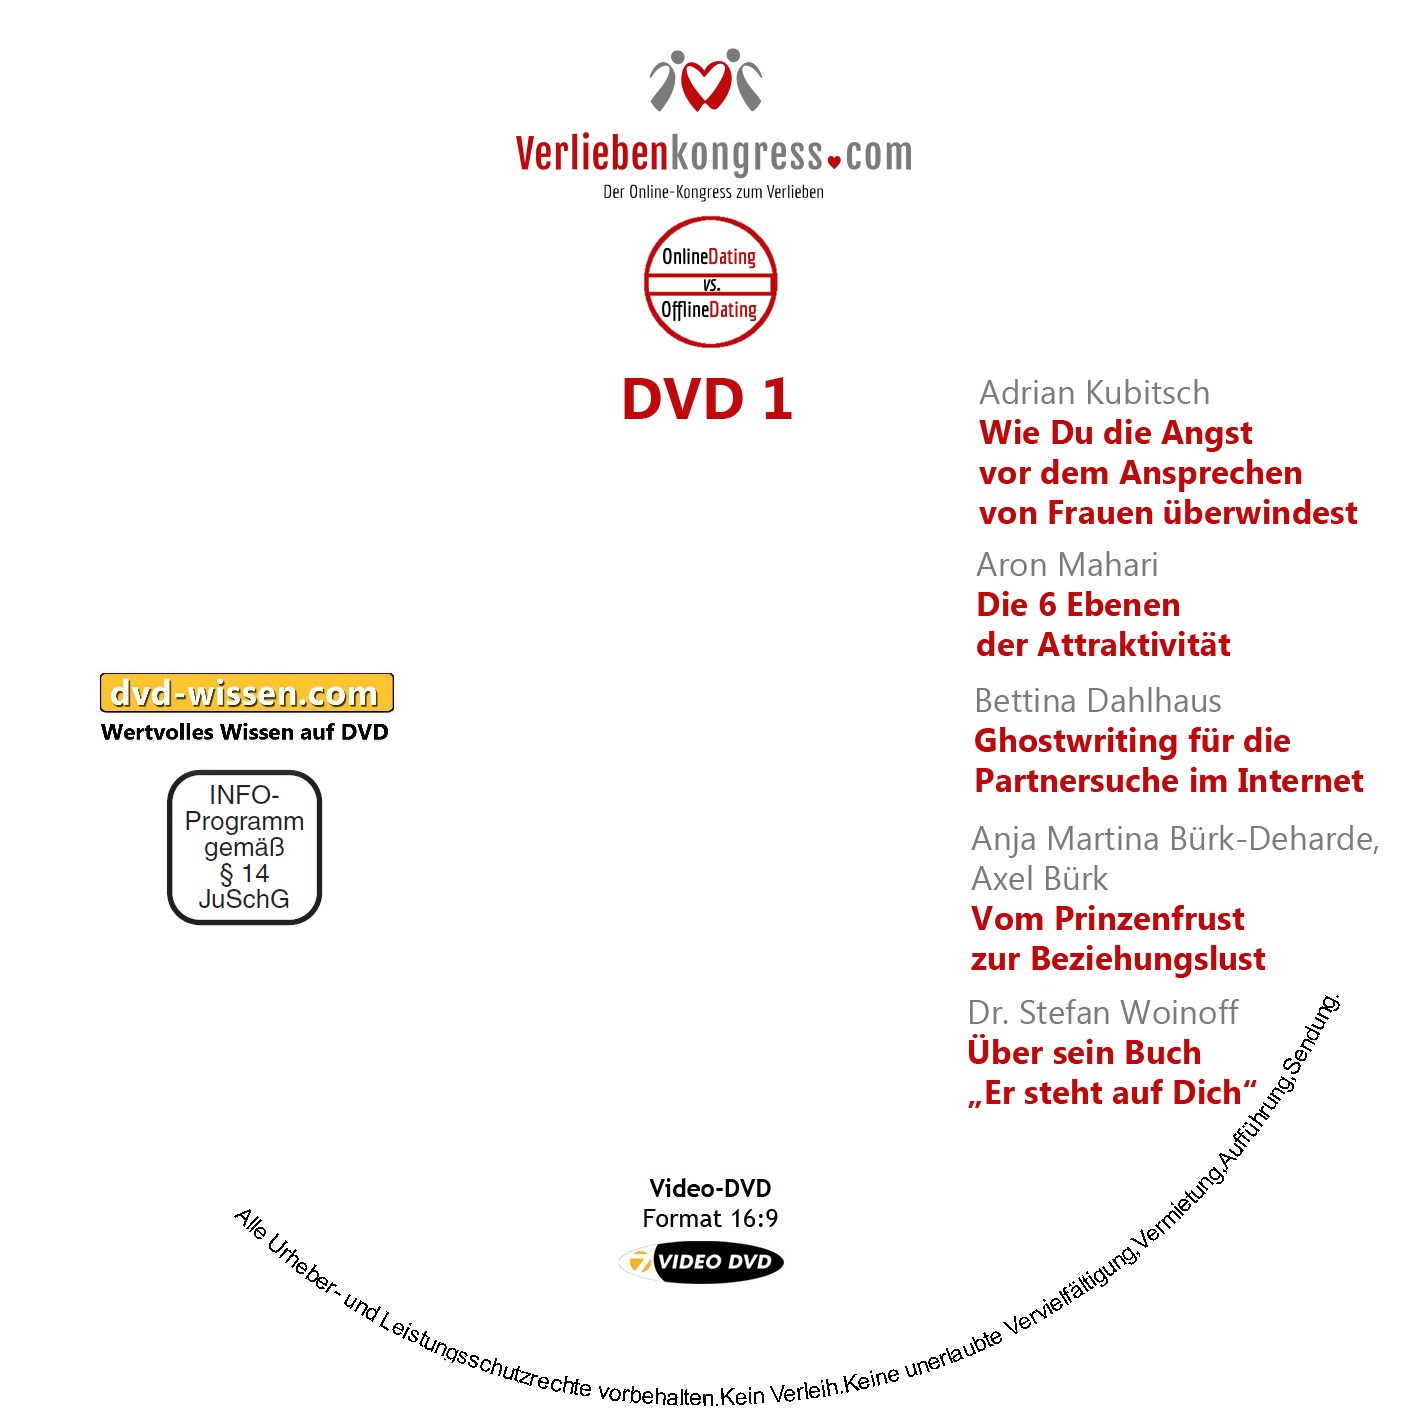 Online-Verlieben-Kongress 2017 auf DVD